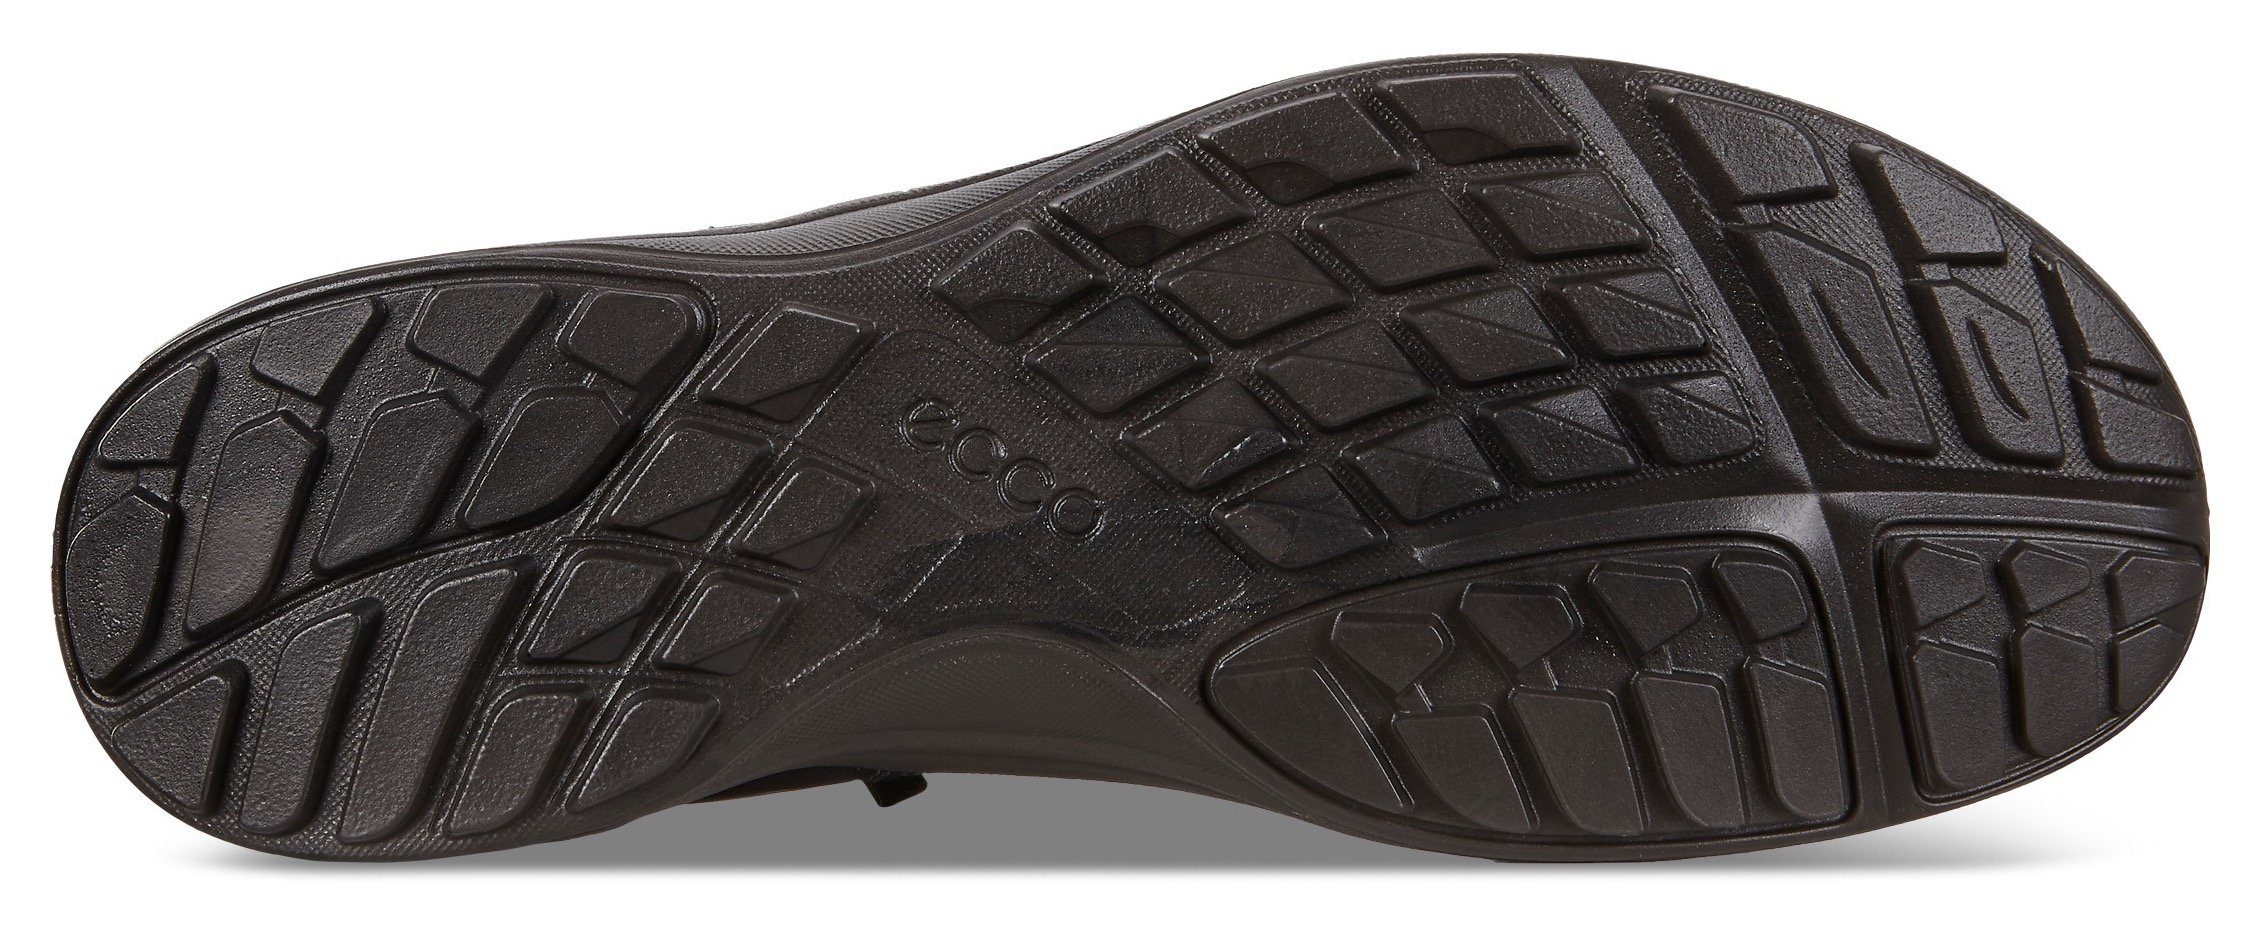 mit praktischem Ecco Schnellverschluss Sneaker LT schwarz Slip-On Terracruise W